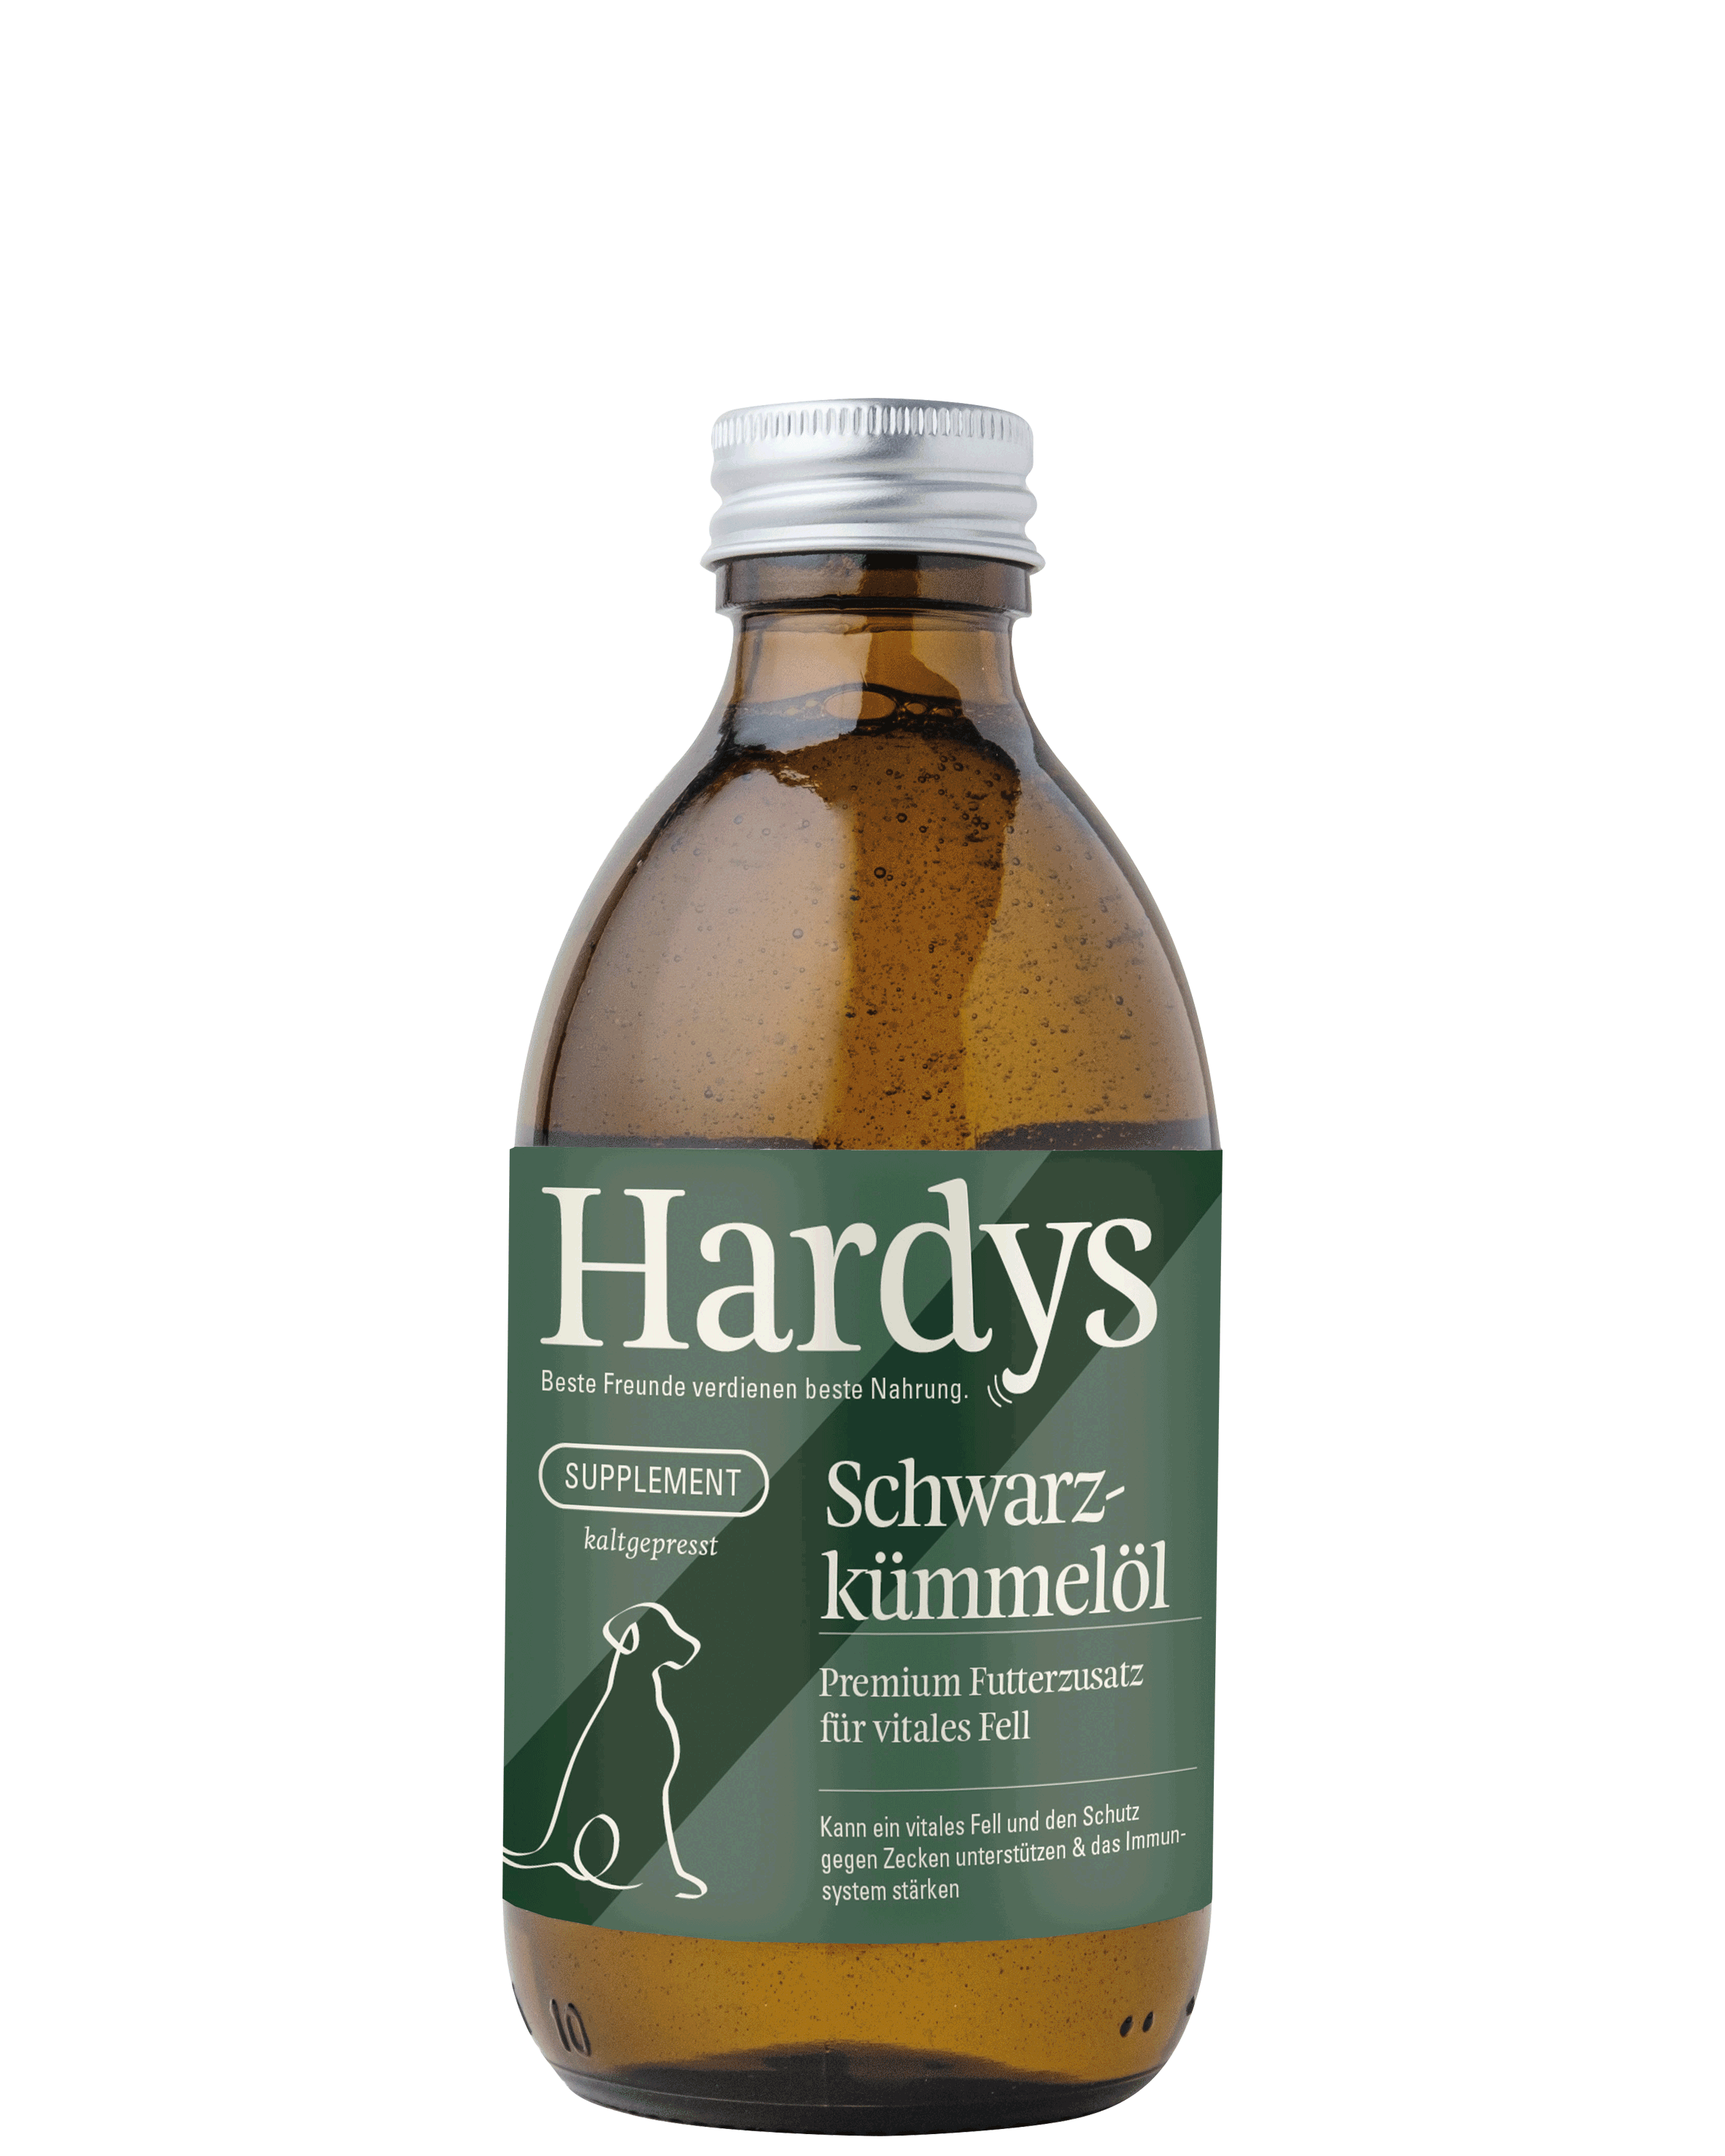 Hardys Supplement Schwarzkümmelöl, 250 ml